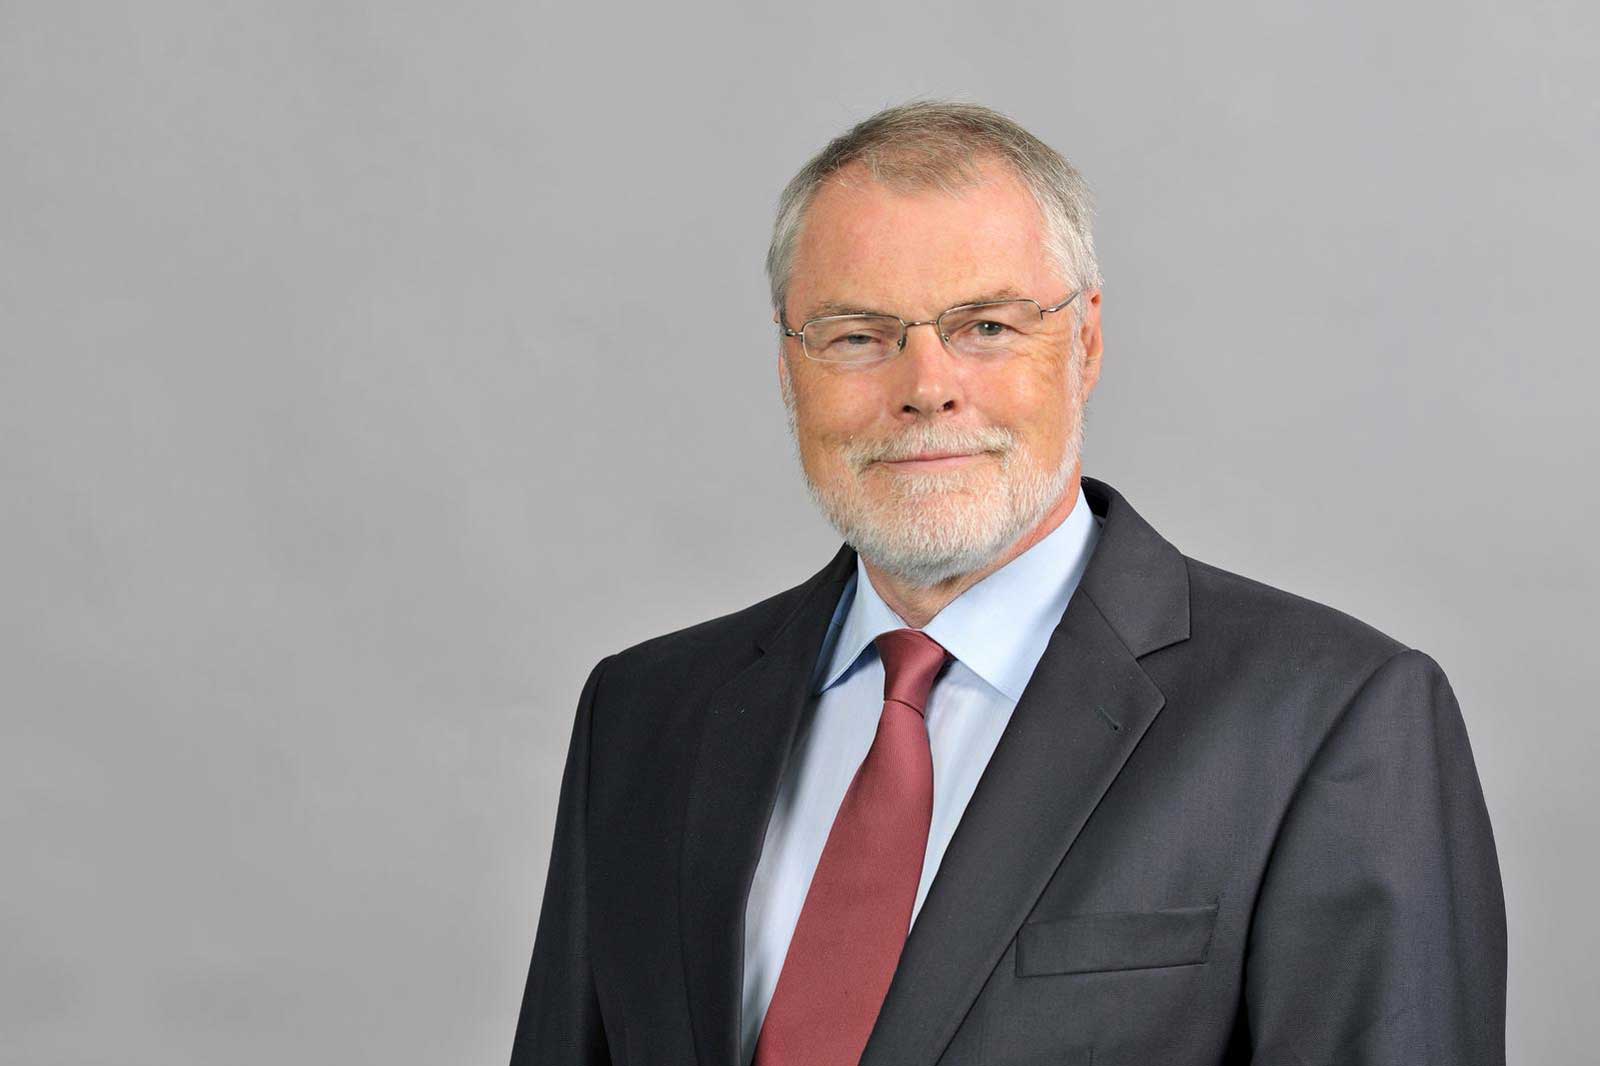 Nikolaus von Bargen | Senior Consultant @ RWE Technology GmbH